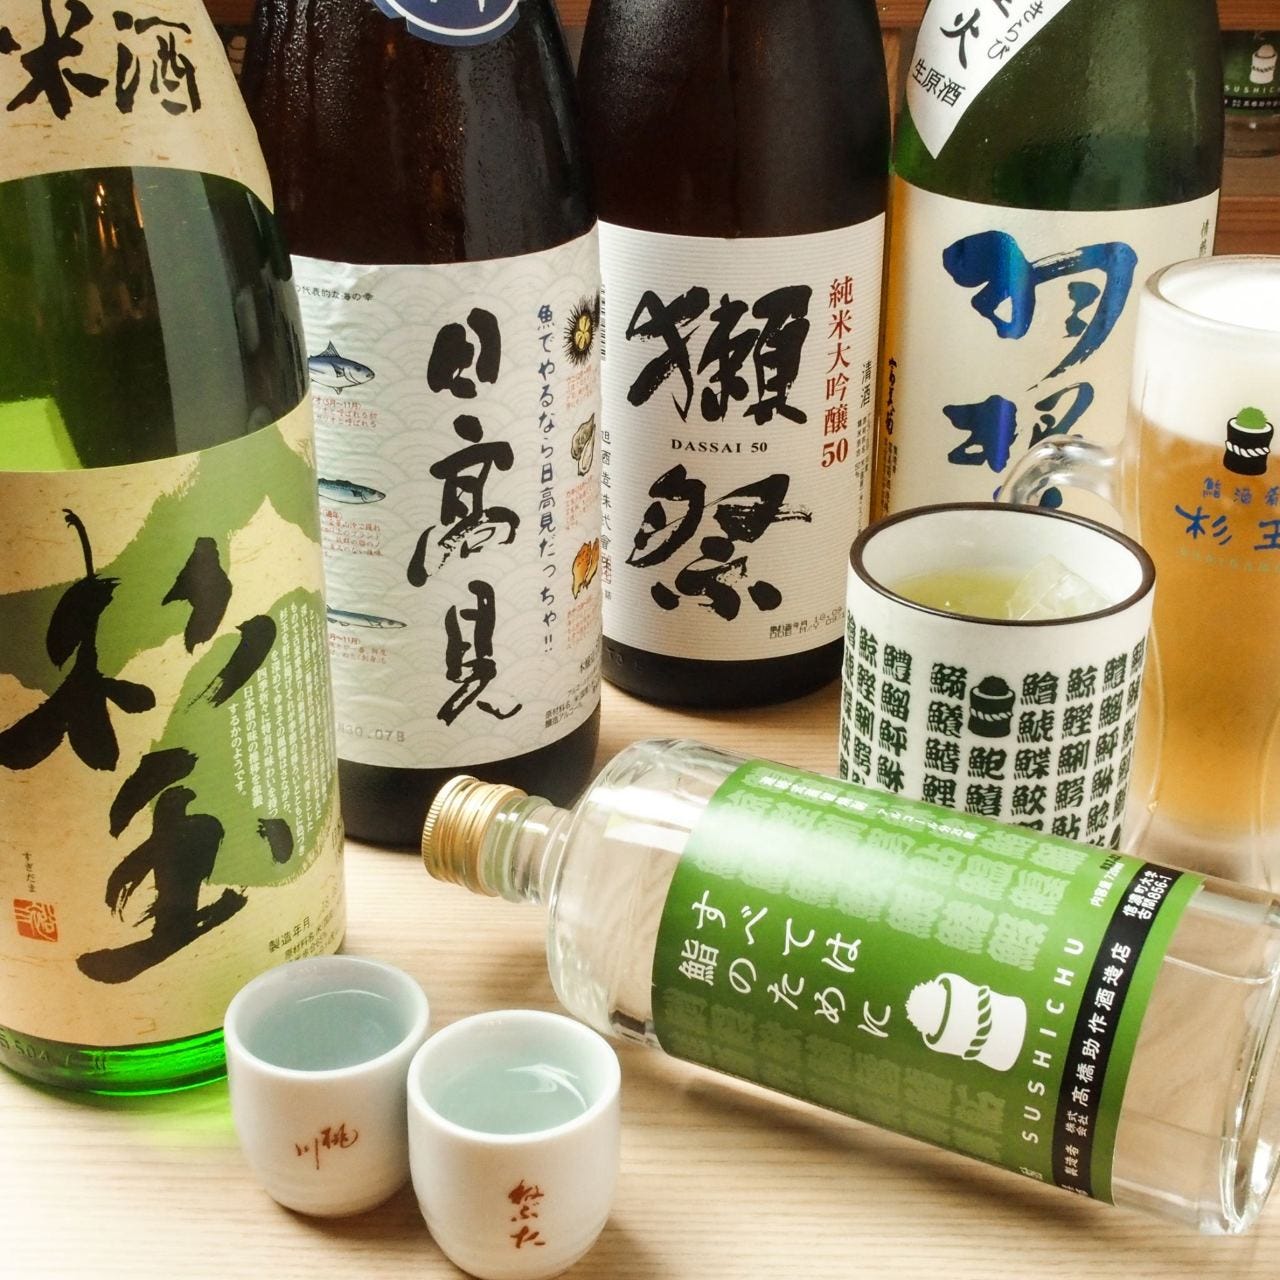 鮨・酒・肴 杉玉 京急蒲田